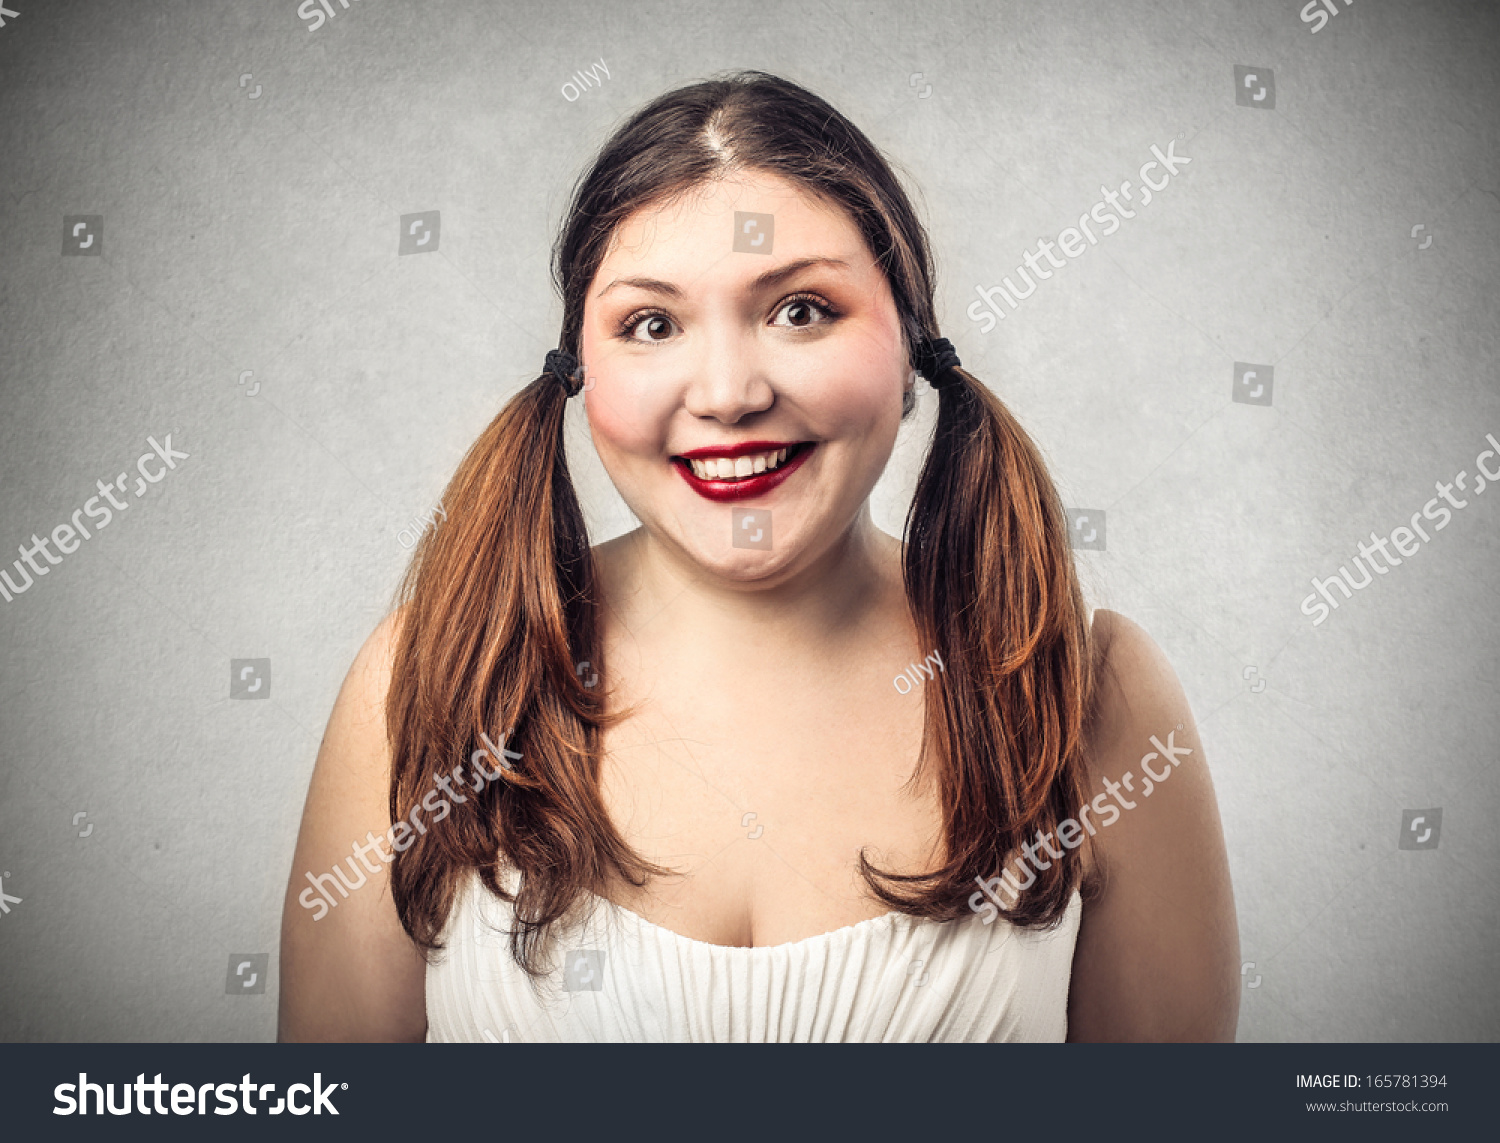 Chubby girl facial